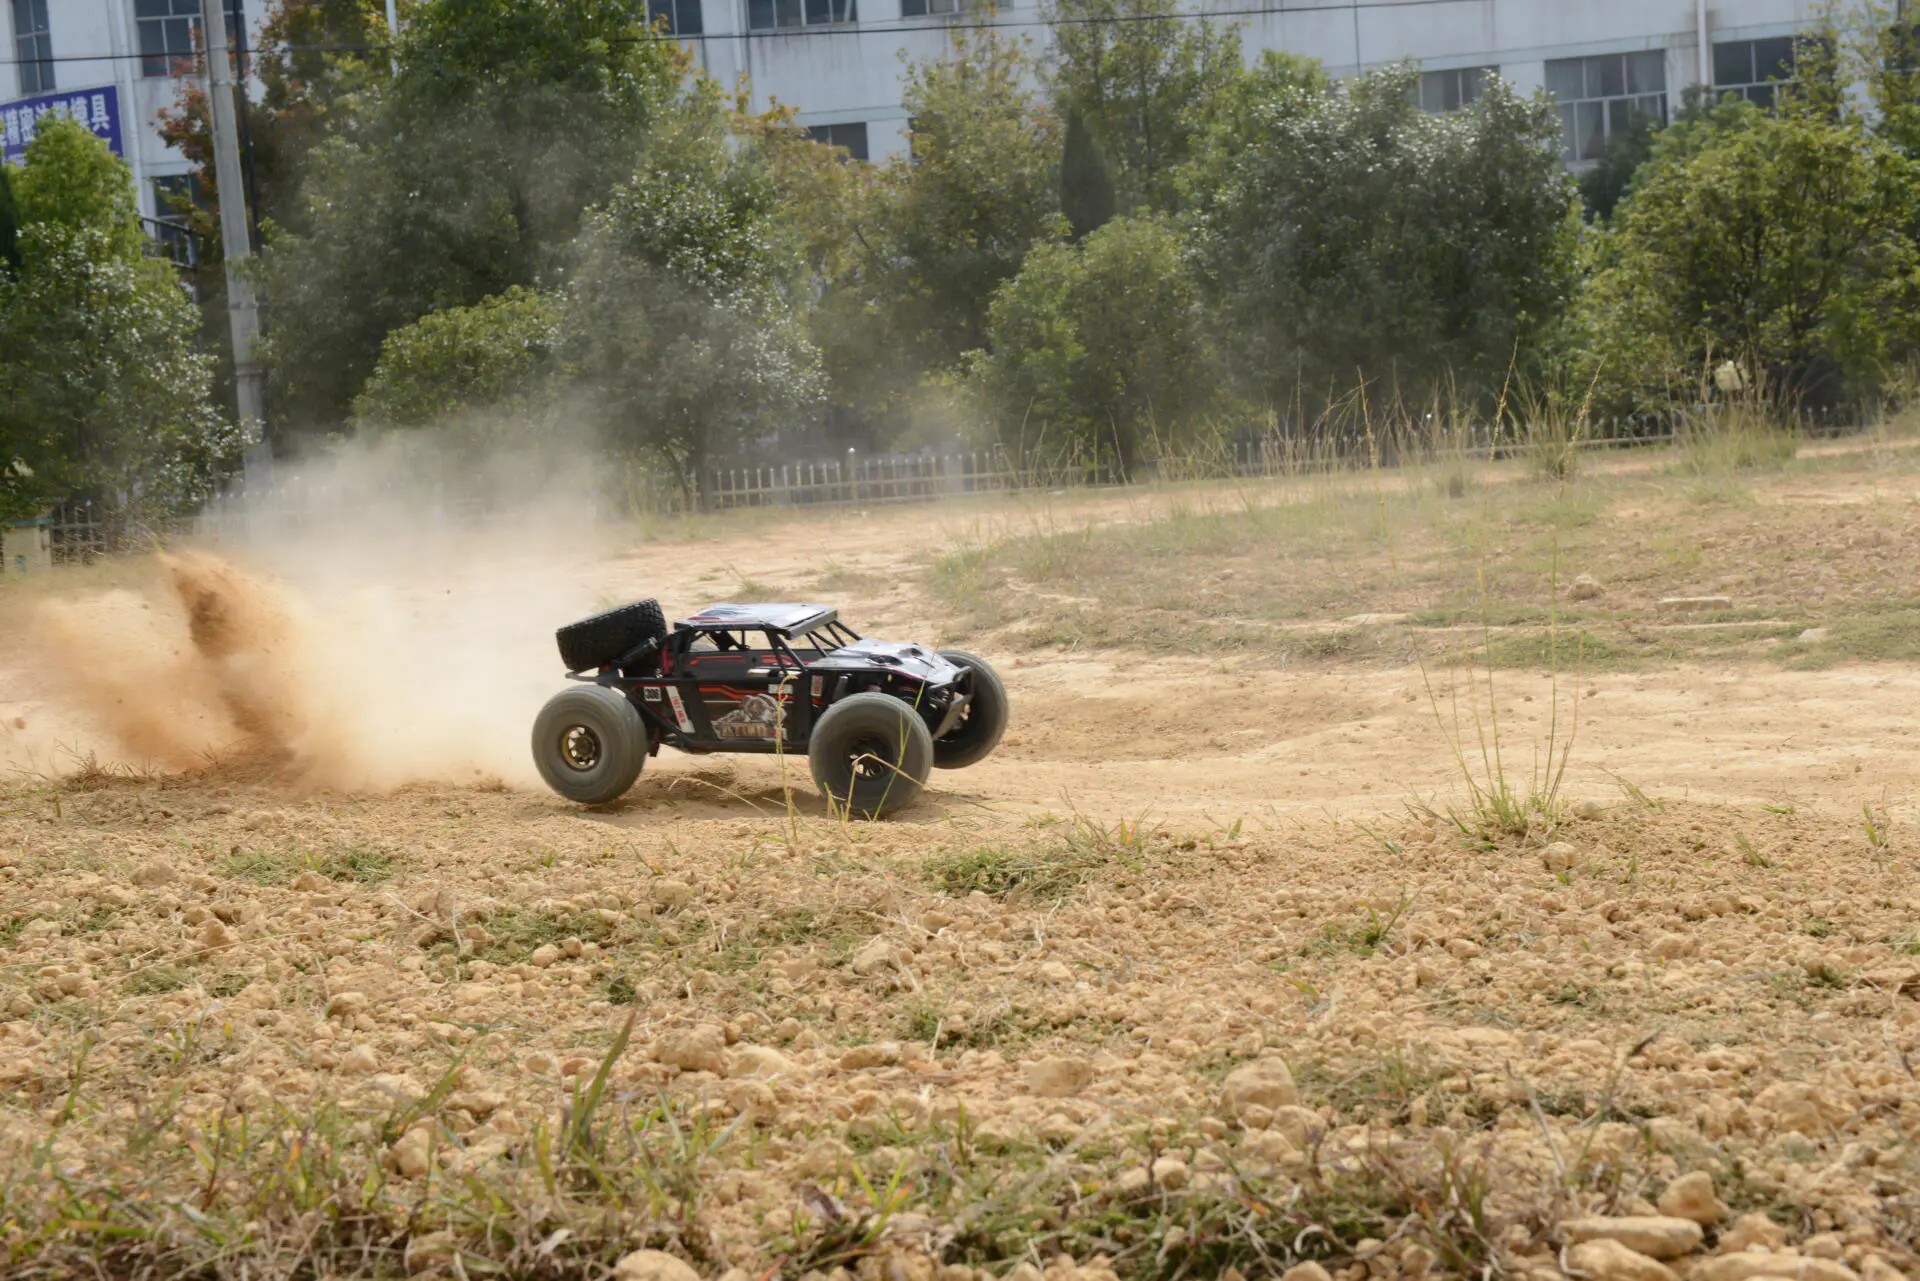 FS Racing Atom 6s 4WD 1/8 Desert Buggy